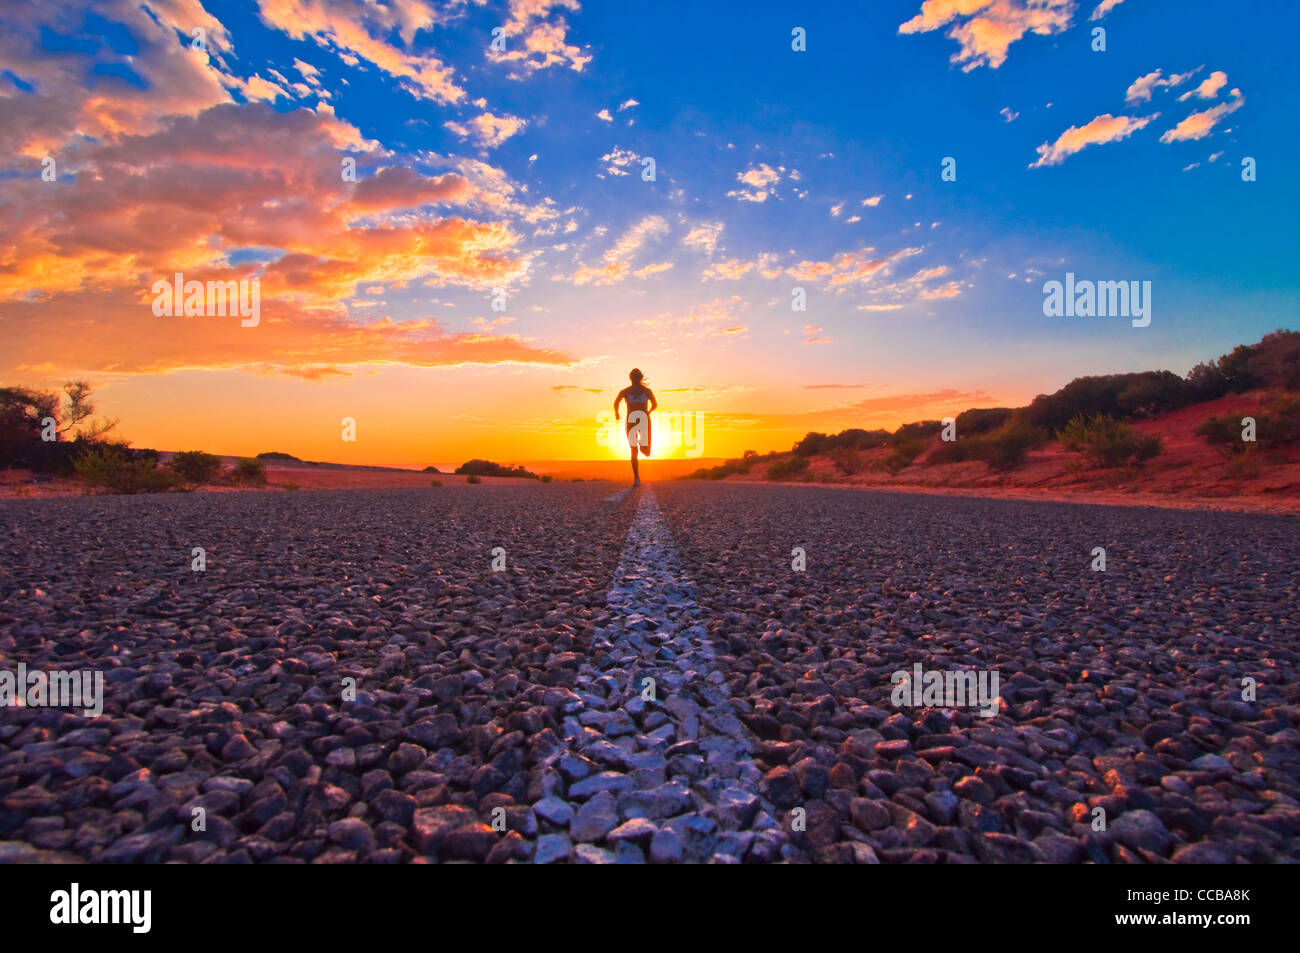 Coureuse du jogging au lever du soleil sur une route dans l'Outback australien, Monkey Mia, Australie occidentale, Australie Banque D'Images